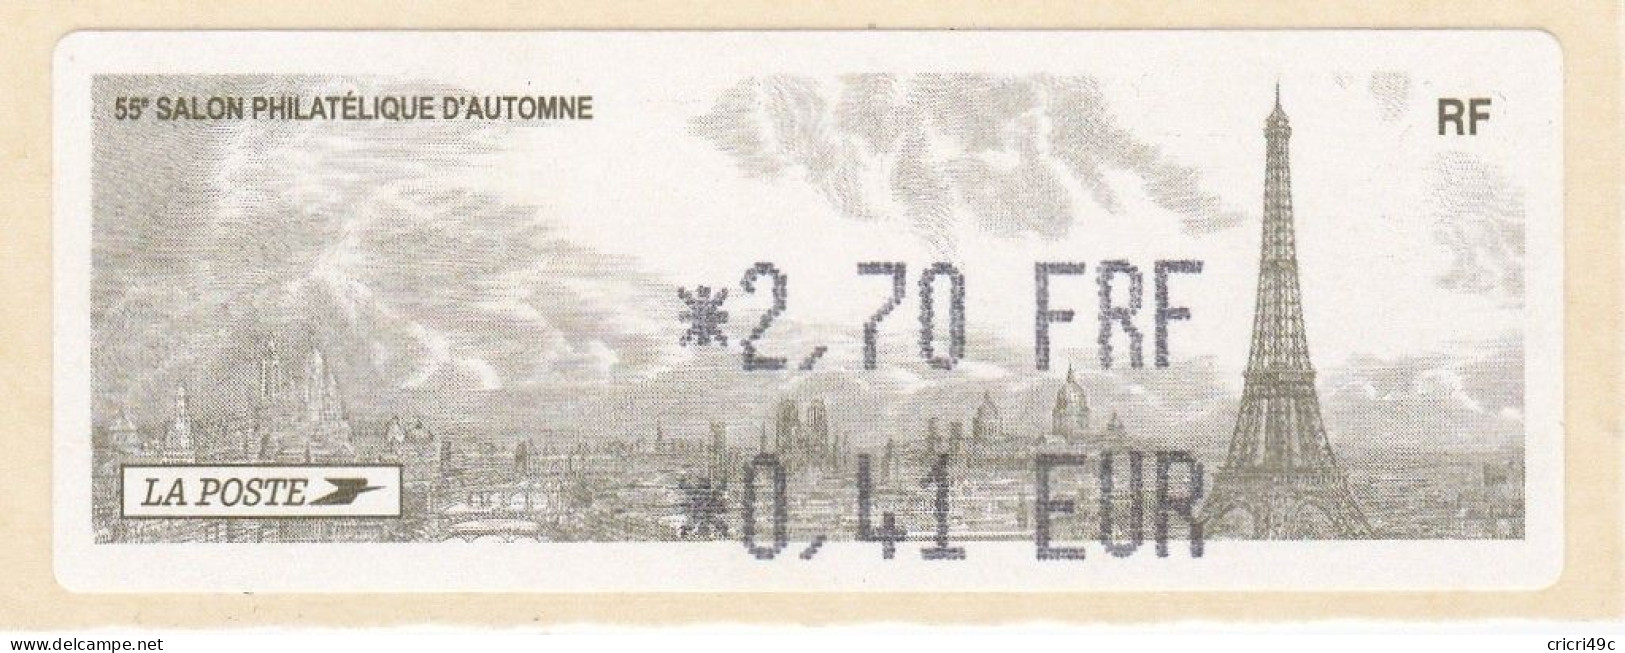 1 ATM LISA. 55è SALON PHILATHELIQUE D"AUTOMNE PARIS  2001. 2.70F  Neufs** - 2010-... Abgebildete Automatenmarke